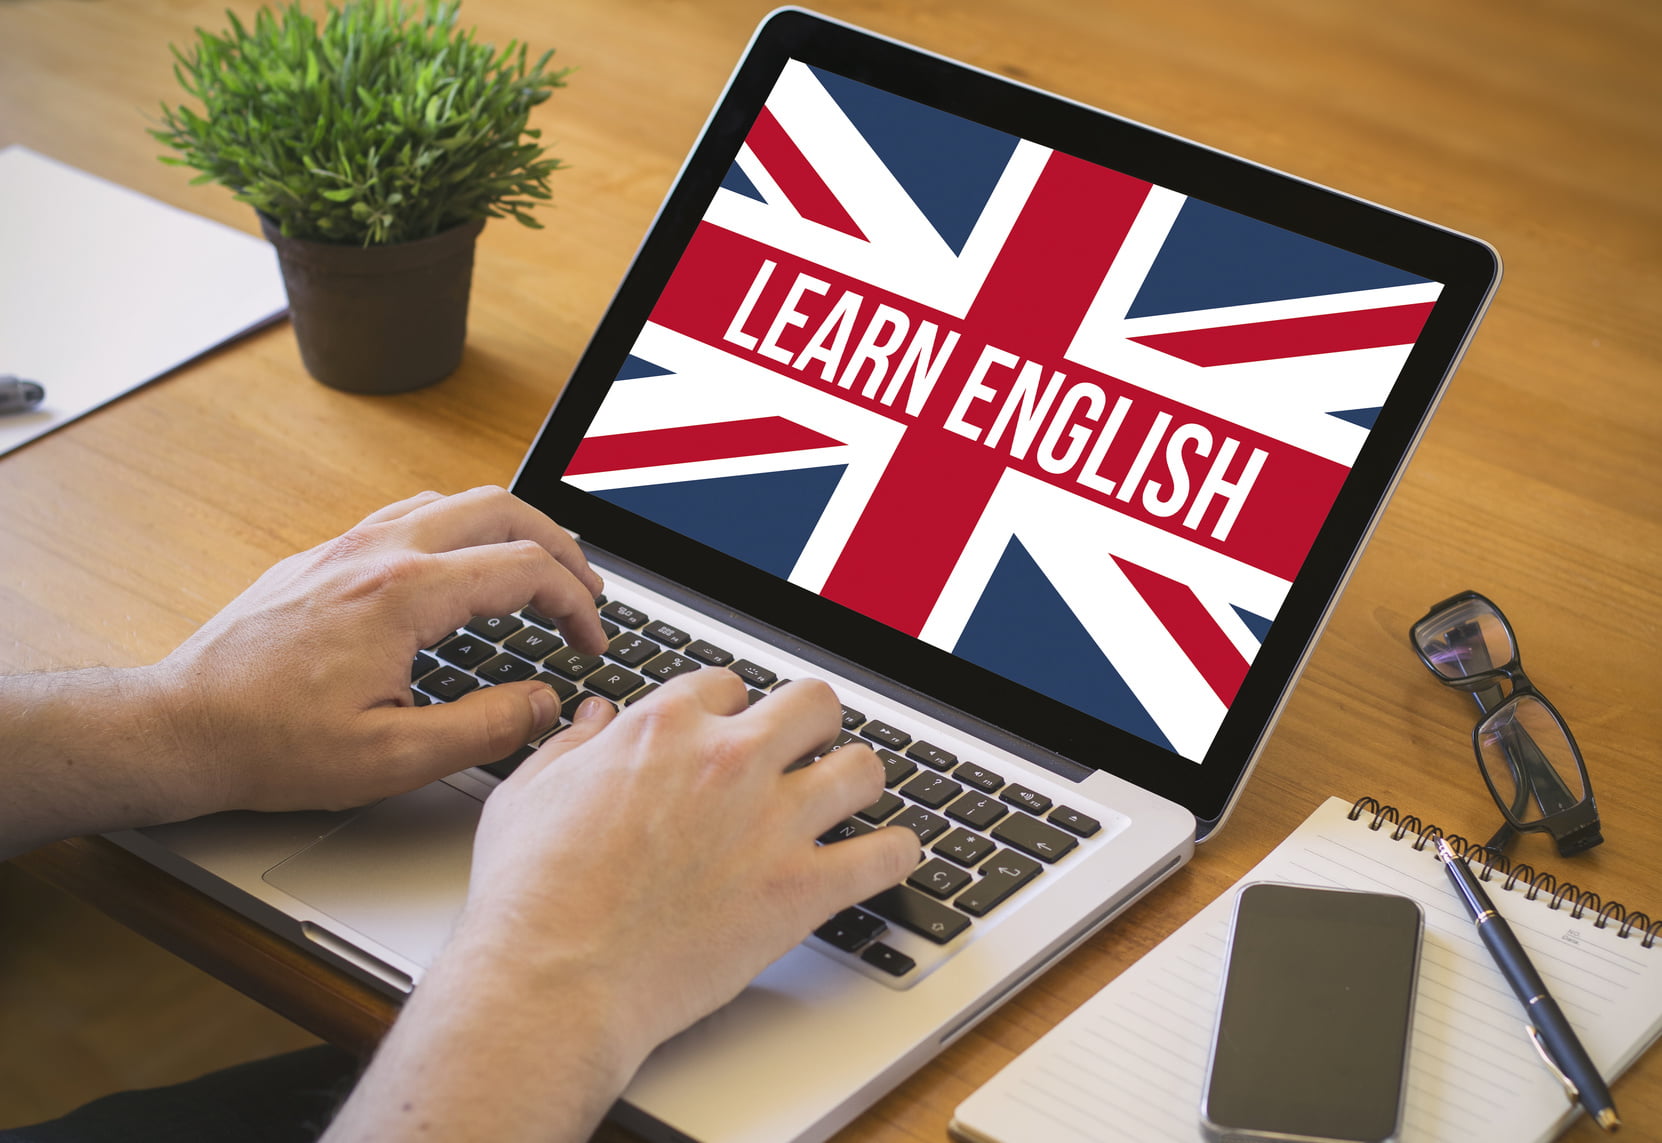 learn english language 1 | Astuces pour apprendre une langue étrangère rapidement